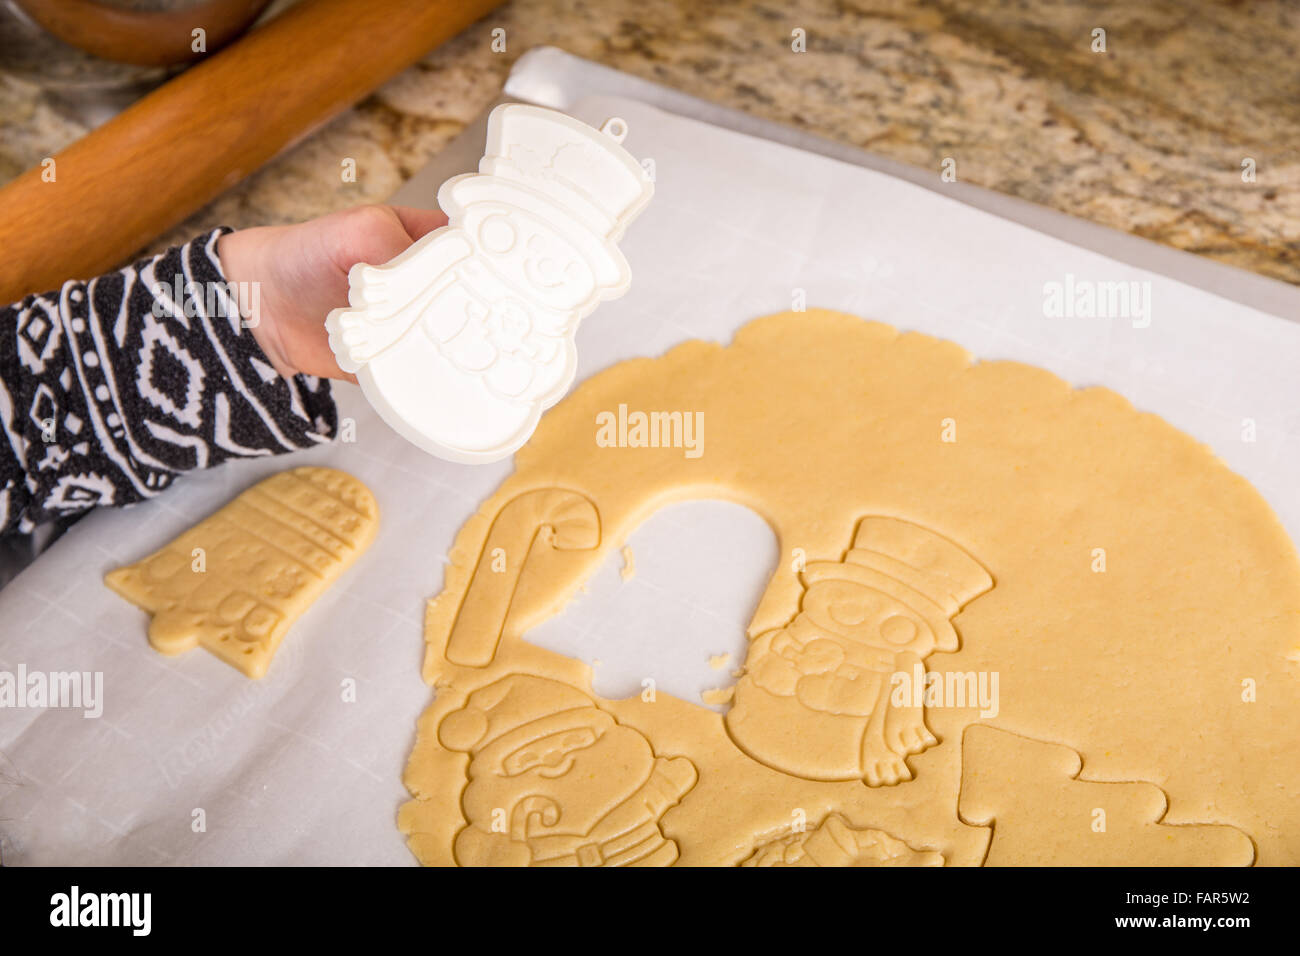 Dieci anni di ragazza utilizzando cookie cutter per tagliare lo zucchero di Natale i cookie in Issaquah, Washington, Stati Uniti d'America Foto Stock